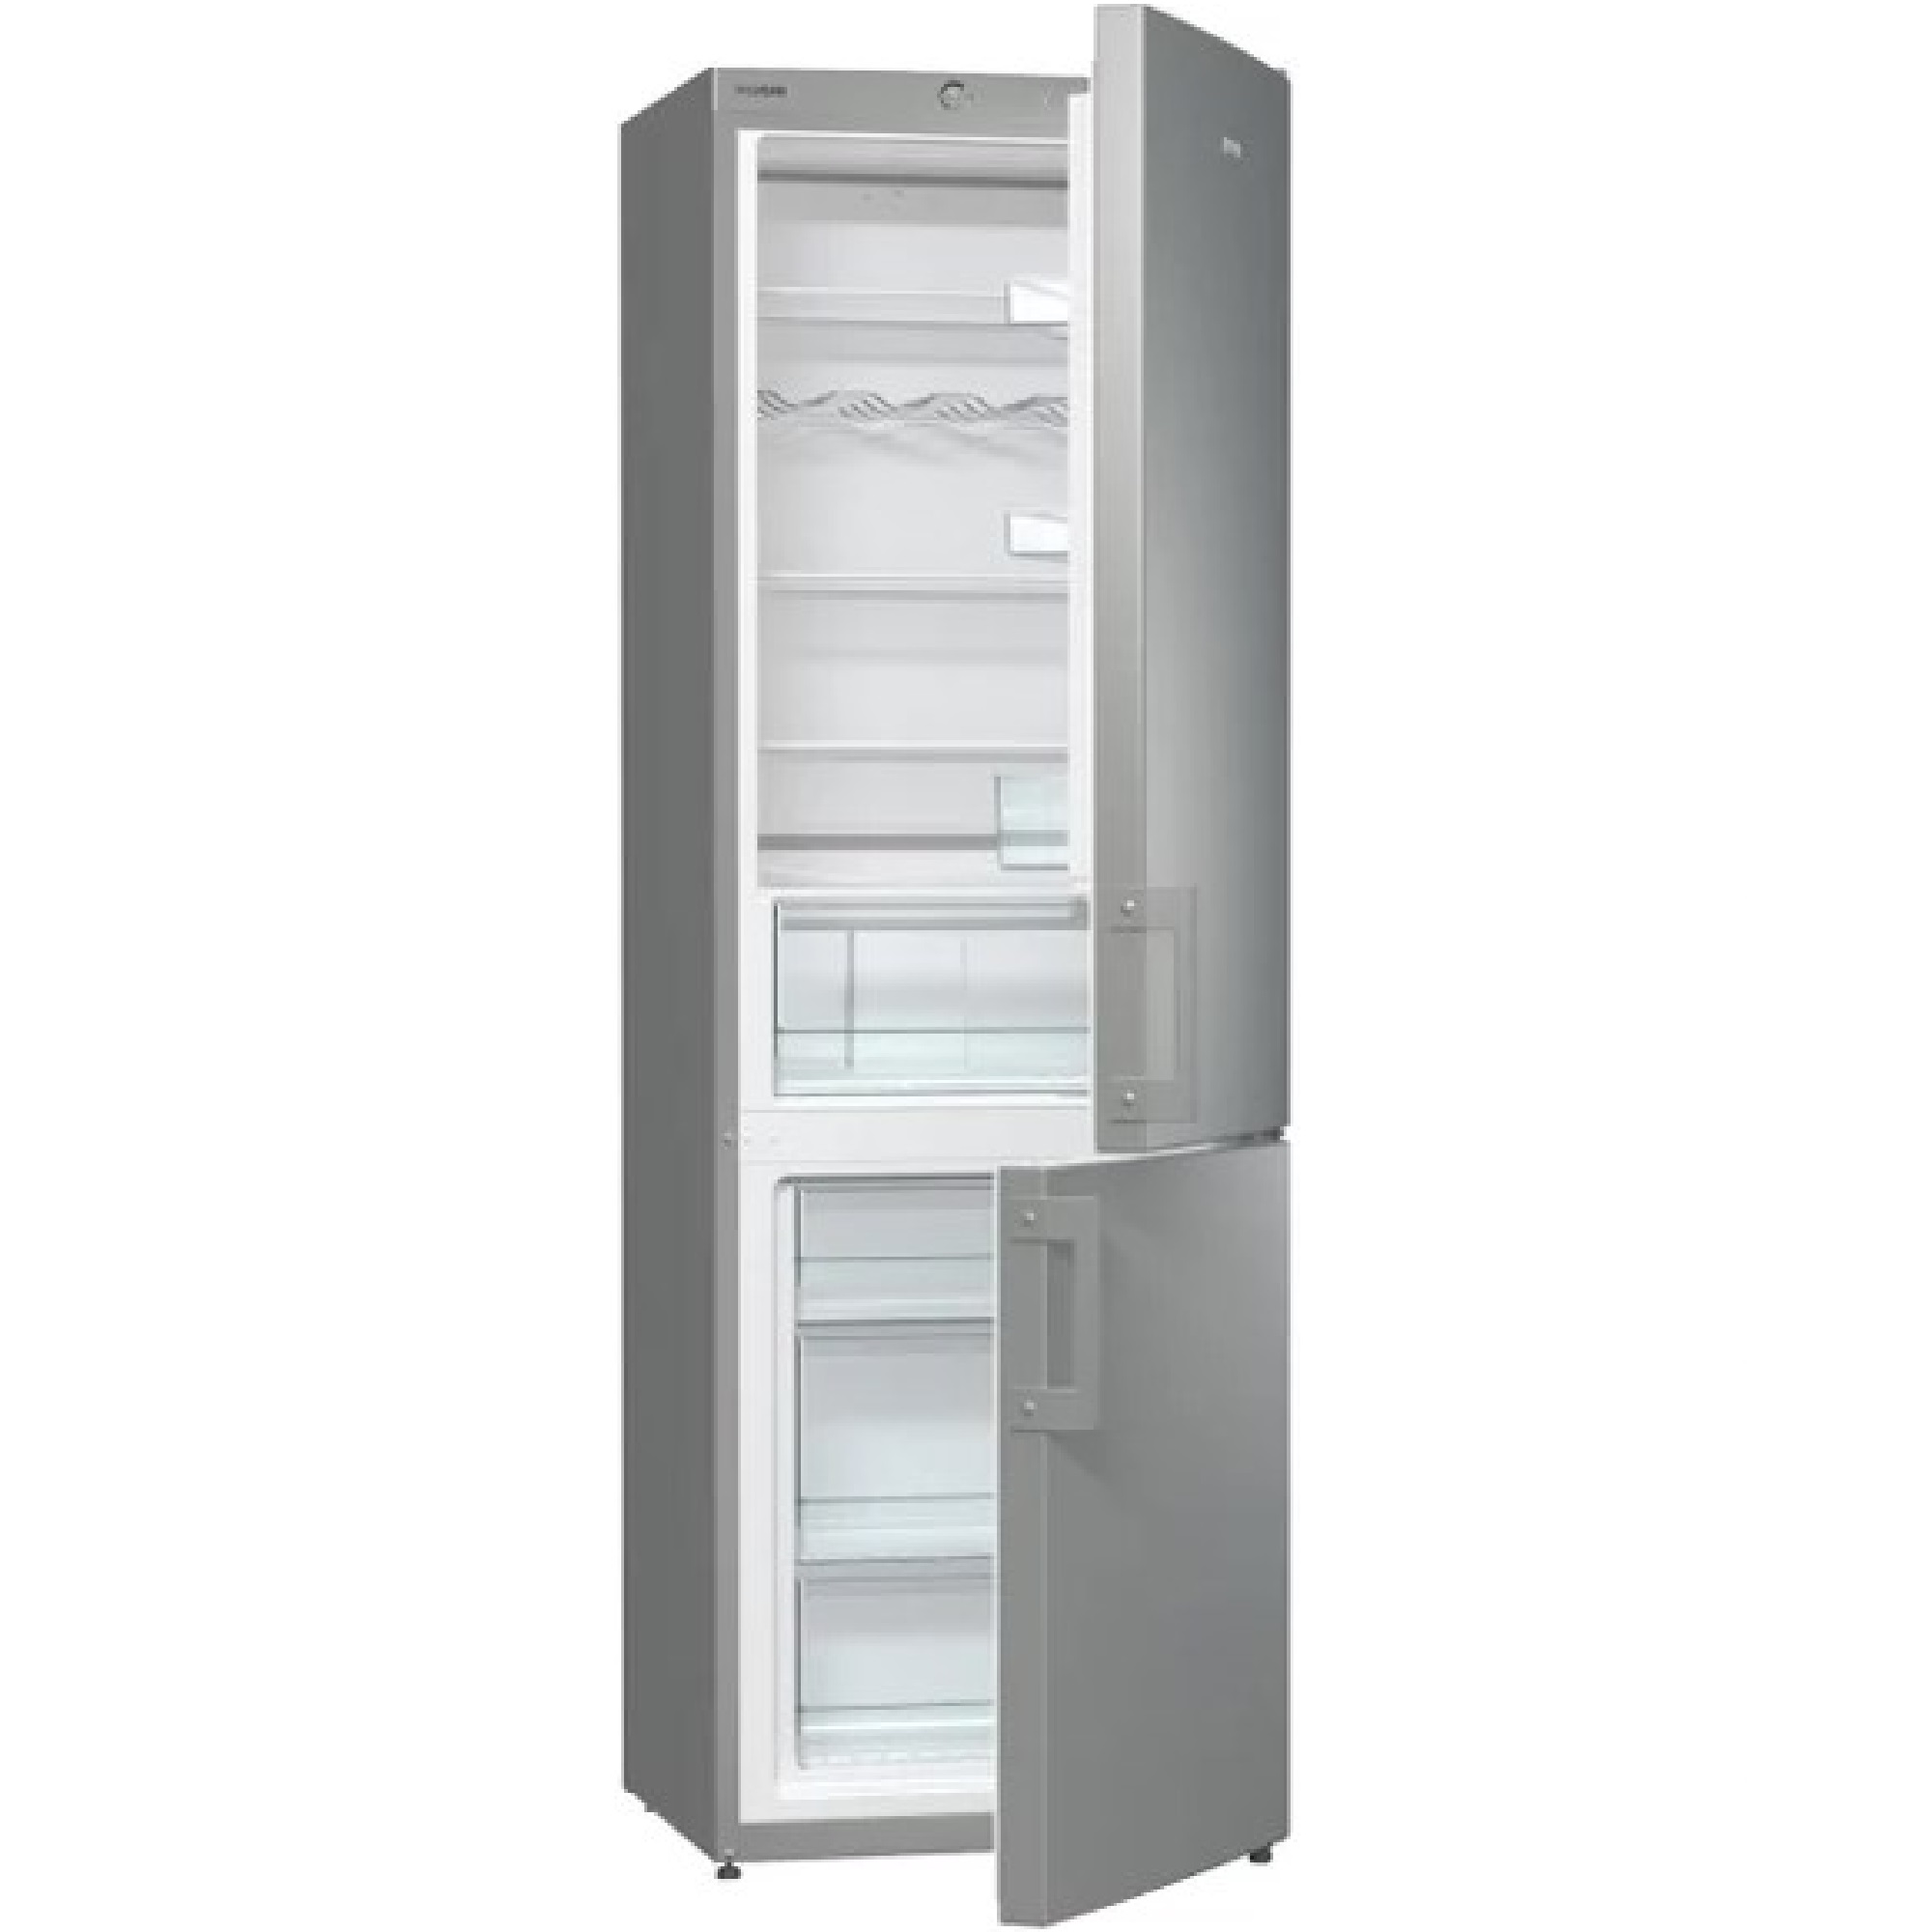 Двухкамерный холодильник морозильник. Холодильник Gorenje rk6201es4. Морозильник Gorenje FN 6191 CX. Gorenje nrk6202axl4. Холодильник Gorenje NRK 6192 ccr4.